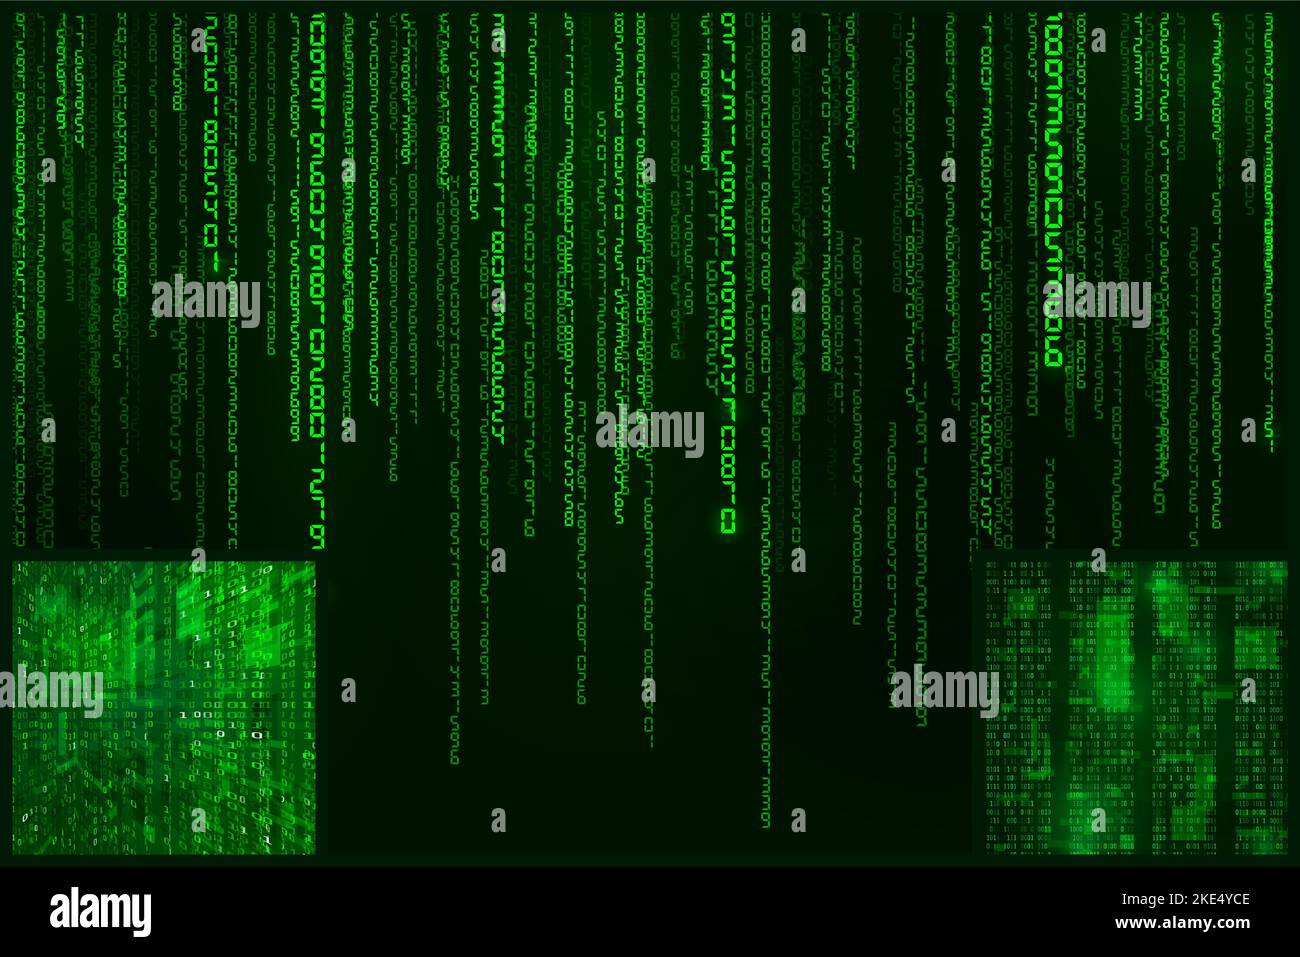 Digitale Datencodierung. Codierter Hintergrund im Cyberspace-Matrix-Stil. Vektorgrafik Stock Vektor